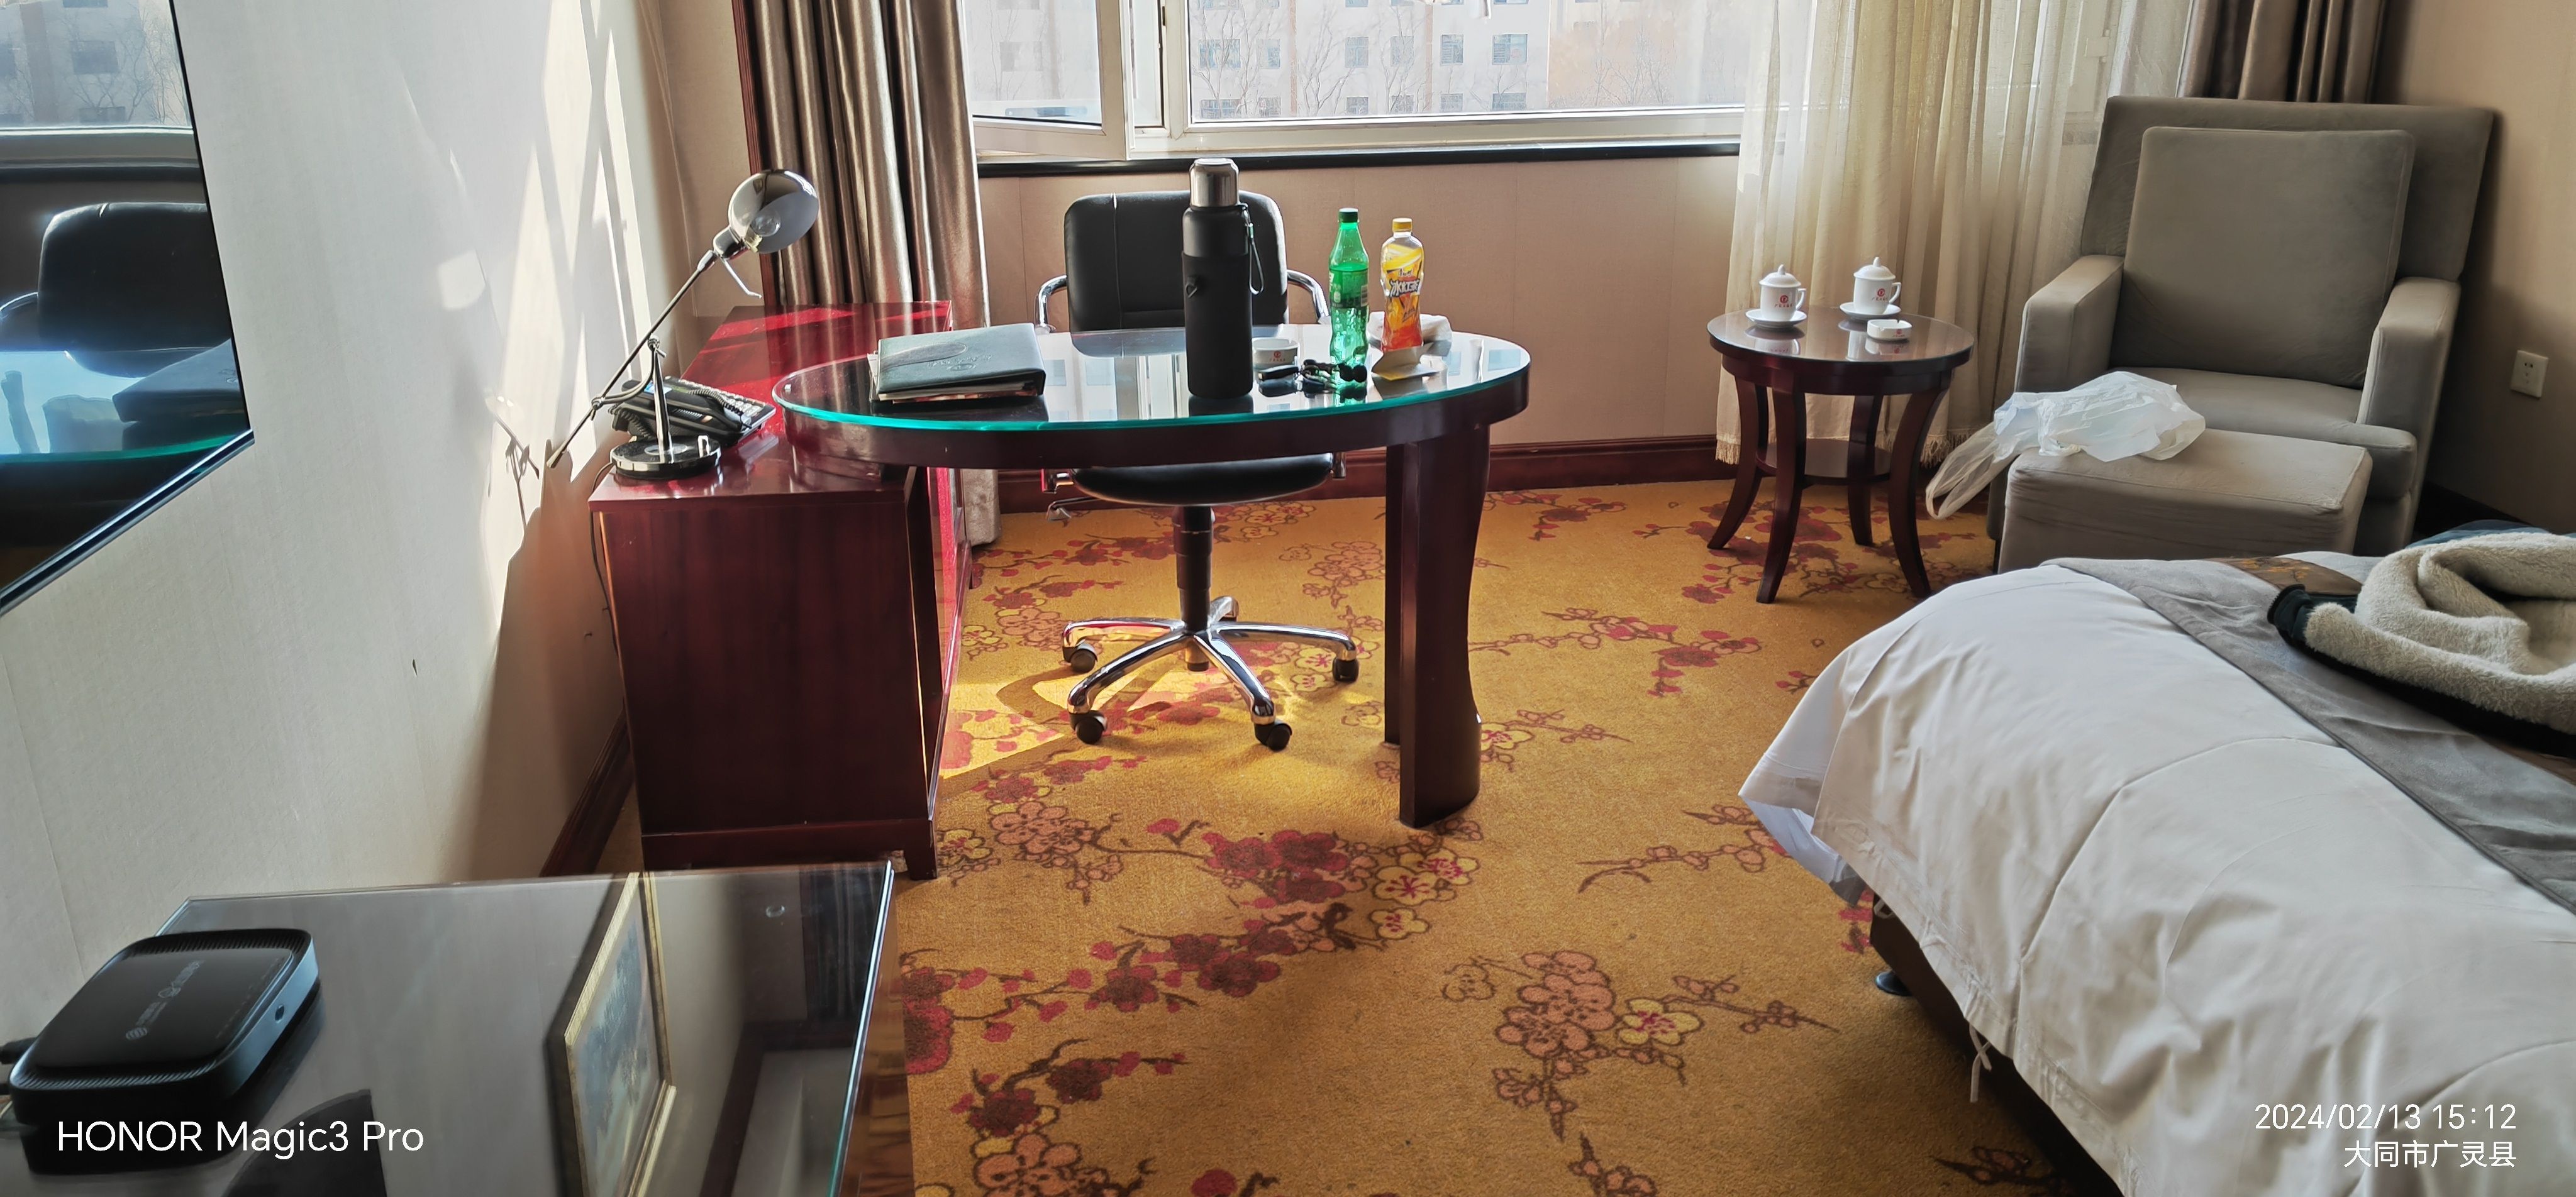 酒店在刚开业的时候就住过一回！当时是广灵最豪华的酒店！房间很大设施有些陈旧但还是能接受！周边吃饭特别